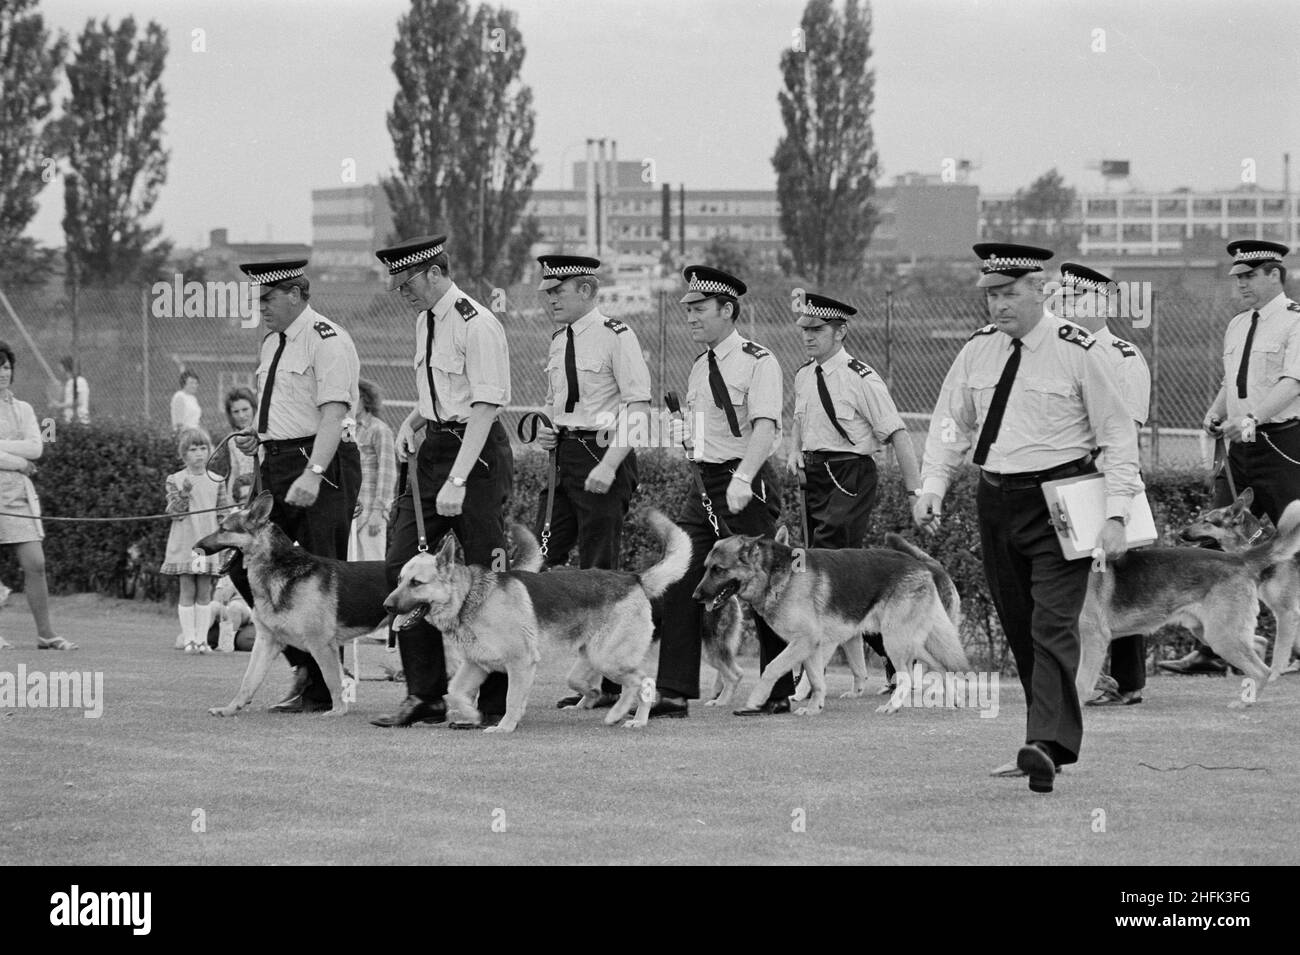 Laing Sports Ground, Rowley Lane, Elstree, Barnett, Londres, 09/06/1973. Los manipuladores de perros de la policía que conducen a sus perros durante una manifestación en el Día de Gala anual que se celebra en el estadio deportivo Laing en Elstree. El Día de la Gala anual se celebró en el campo de deportes de Laing el 9th de junio de 1973. Las atracciones incluyeron aviones modelo, la banda Royal British Legion, carreras infantiles y deportes. Las manifestaciones de obediencia y simulacros de arresto fueron dadas por perros y manipuladores de la policía. Por la noche había baile y bingo en el Club House, y 'cerveza y ritmo' en la marquesina. Más de 2.000 personas asistieron a la gala y más Foto de stock